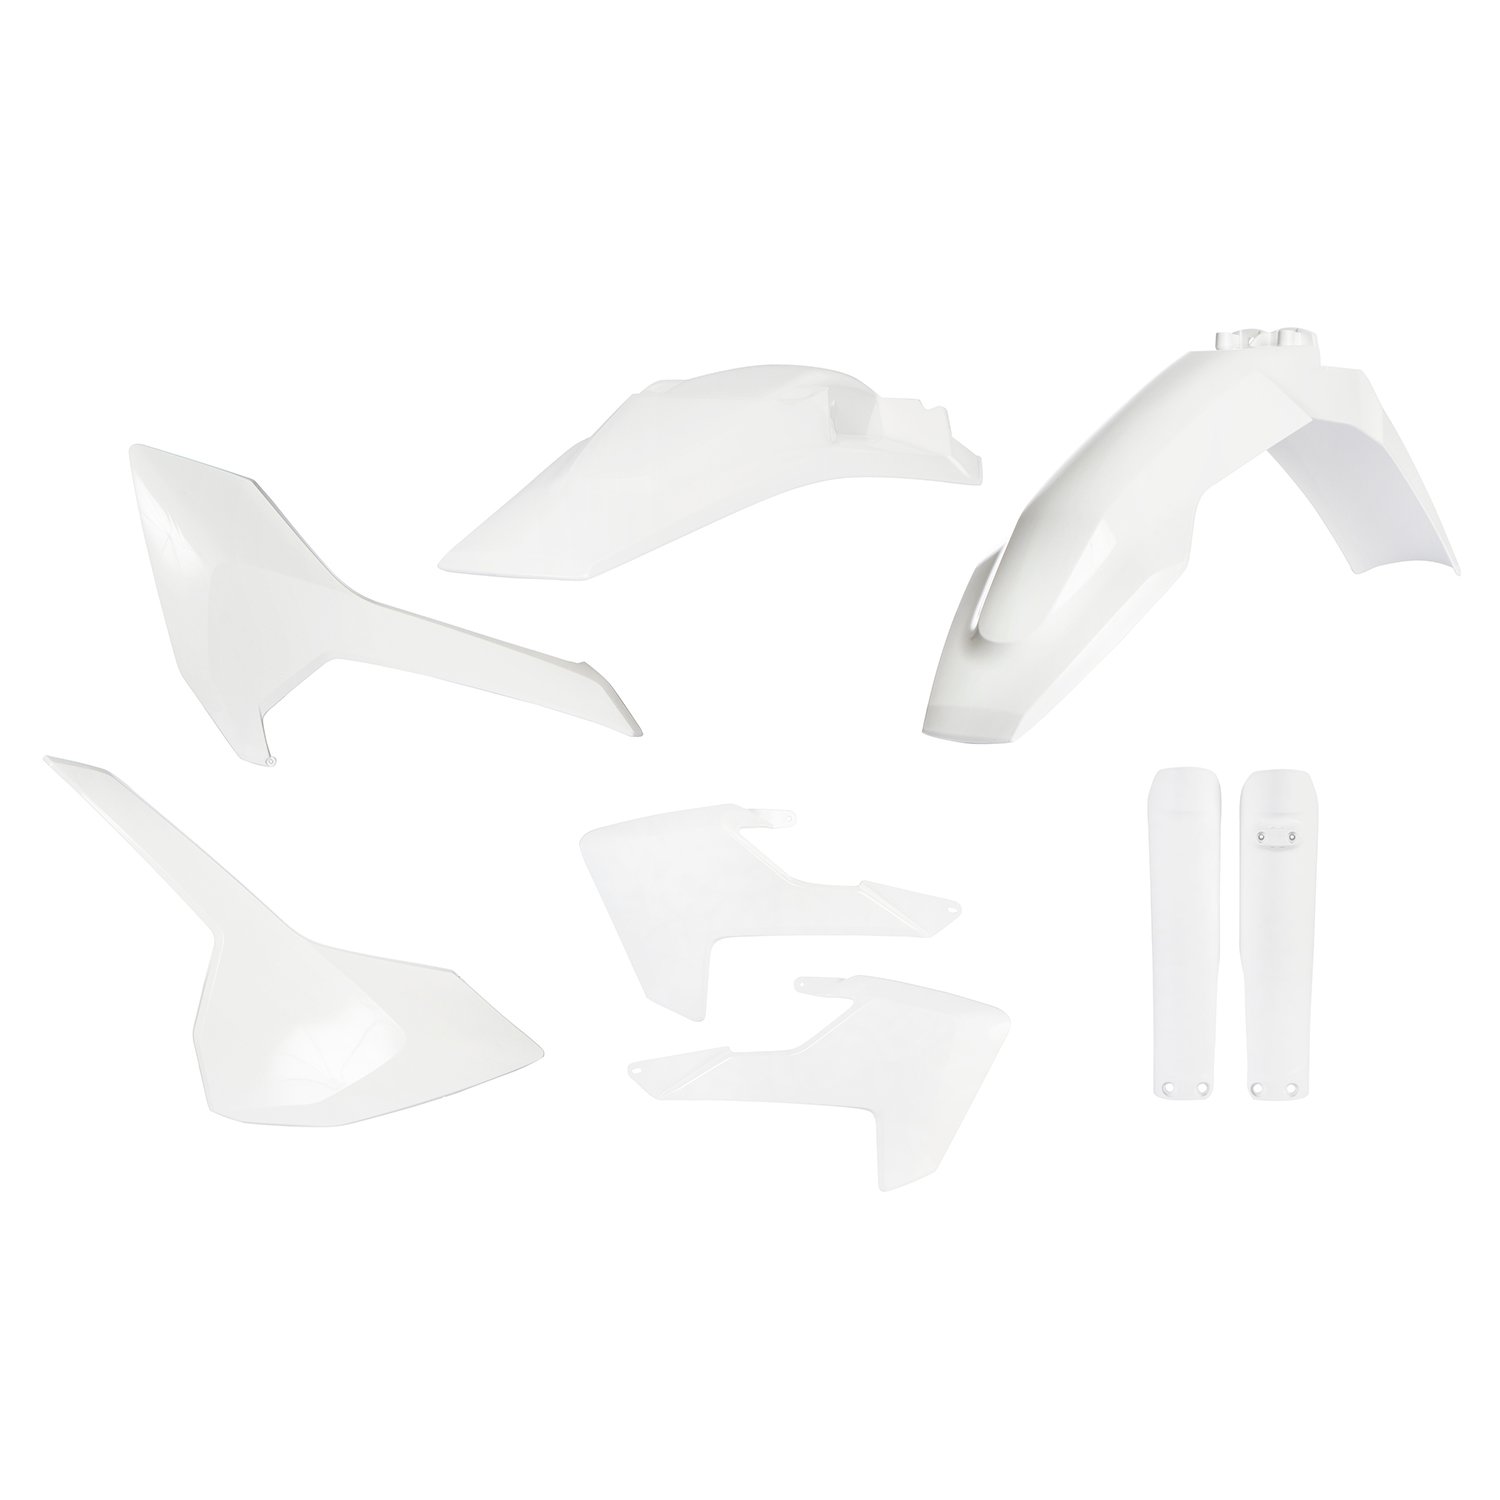 Acerbis Kit Plastique complet Full-Kit Husqvarna TE 125/250/300, FE 250/350/450/501 17-19, Blanc